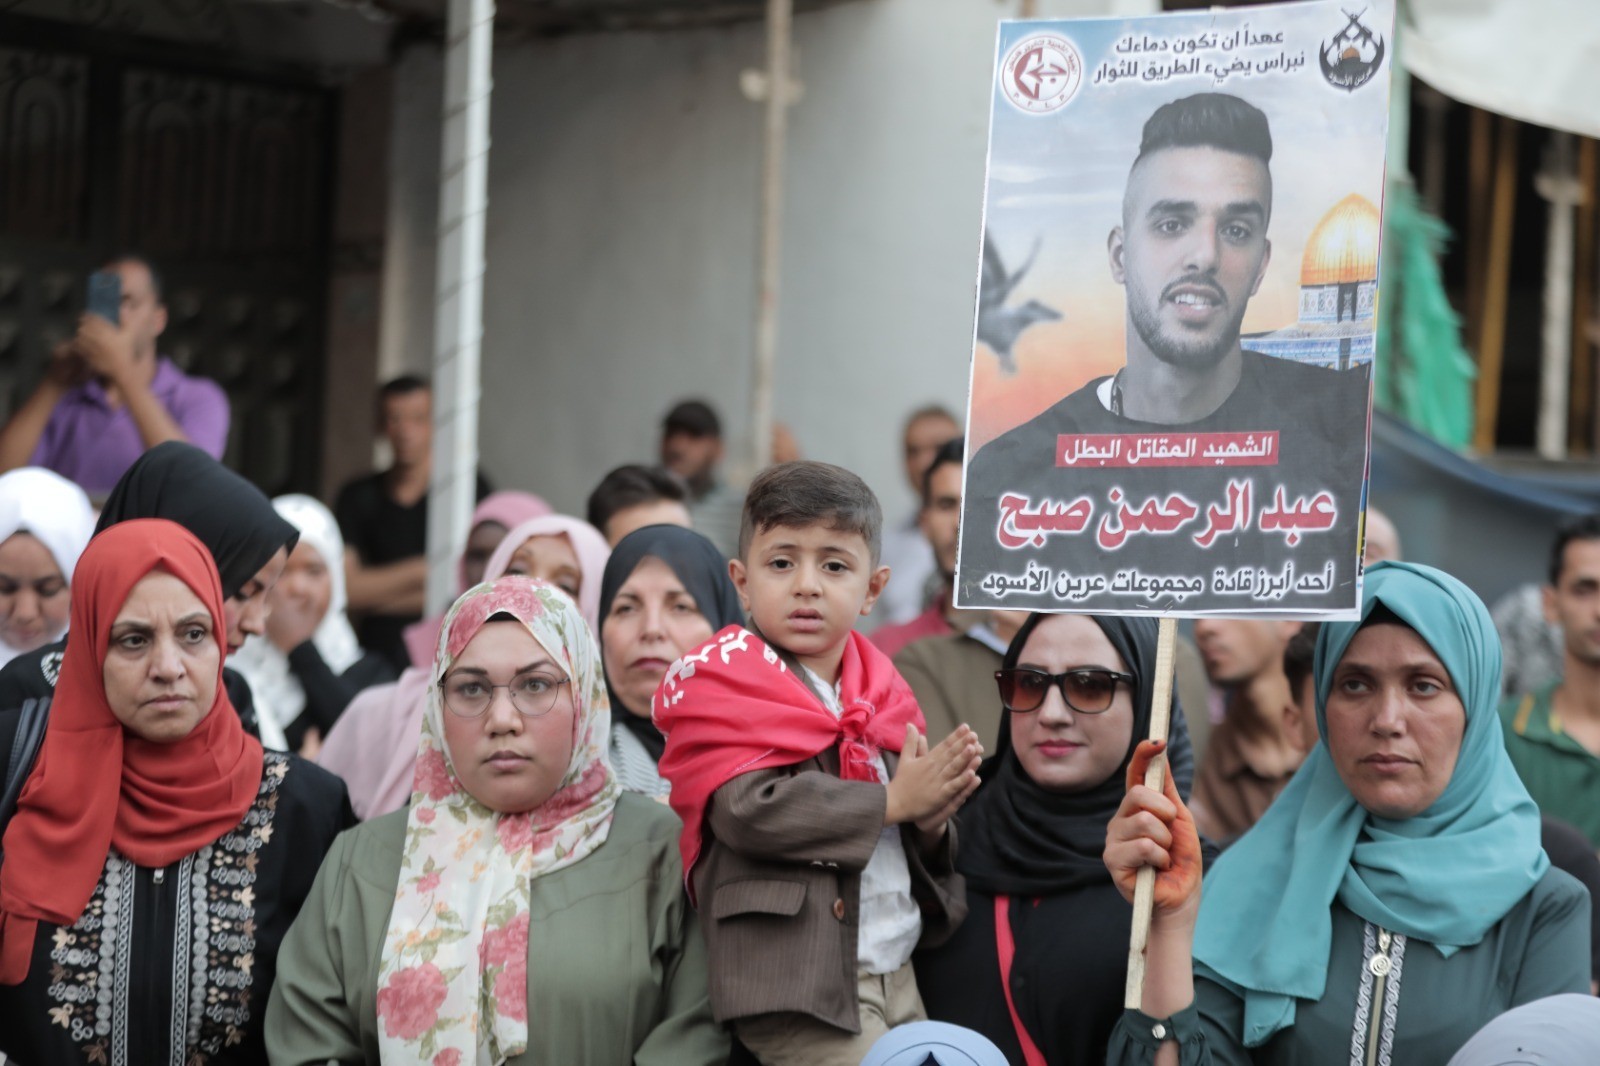 الشعبيّة في غزّة تنظّم جنازة عسكرية ومسيرة غضب وفاءً لرفيقها المقاتل تامر الكيلاني 124.jpeg